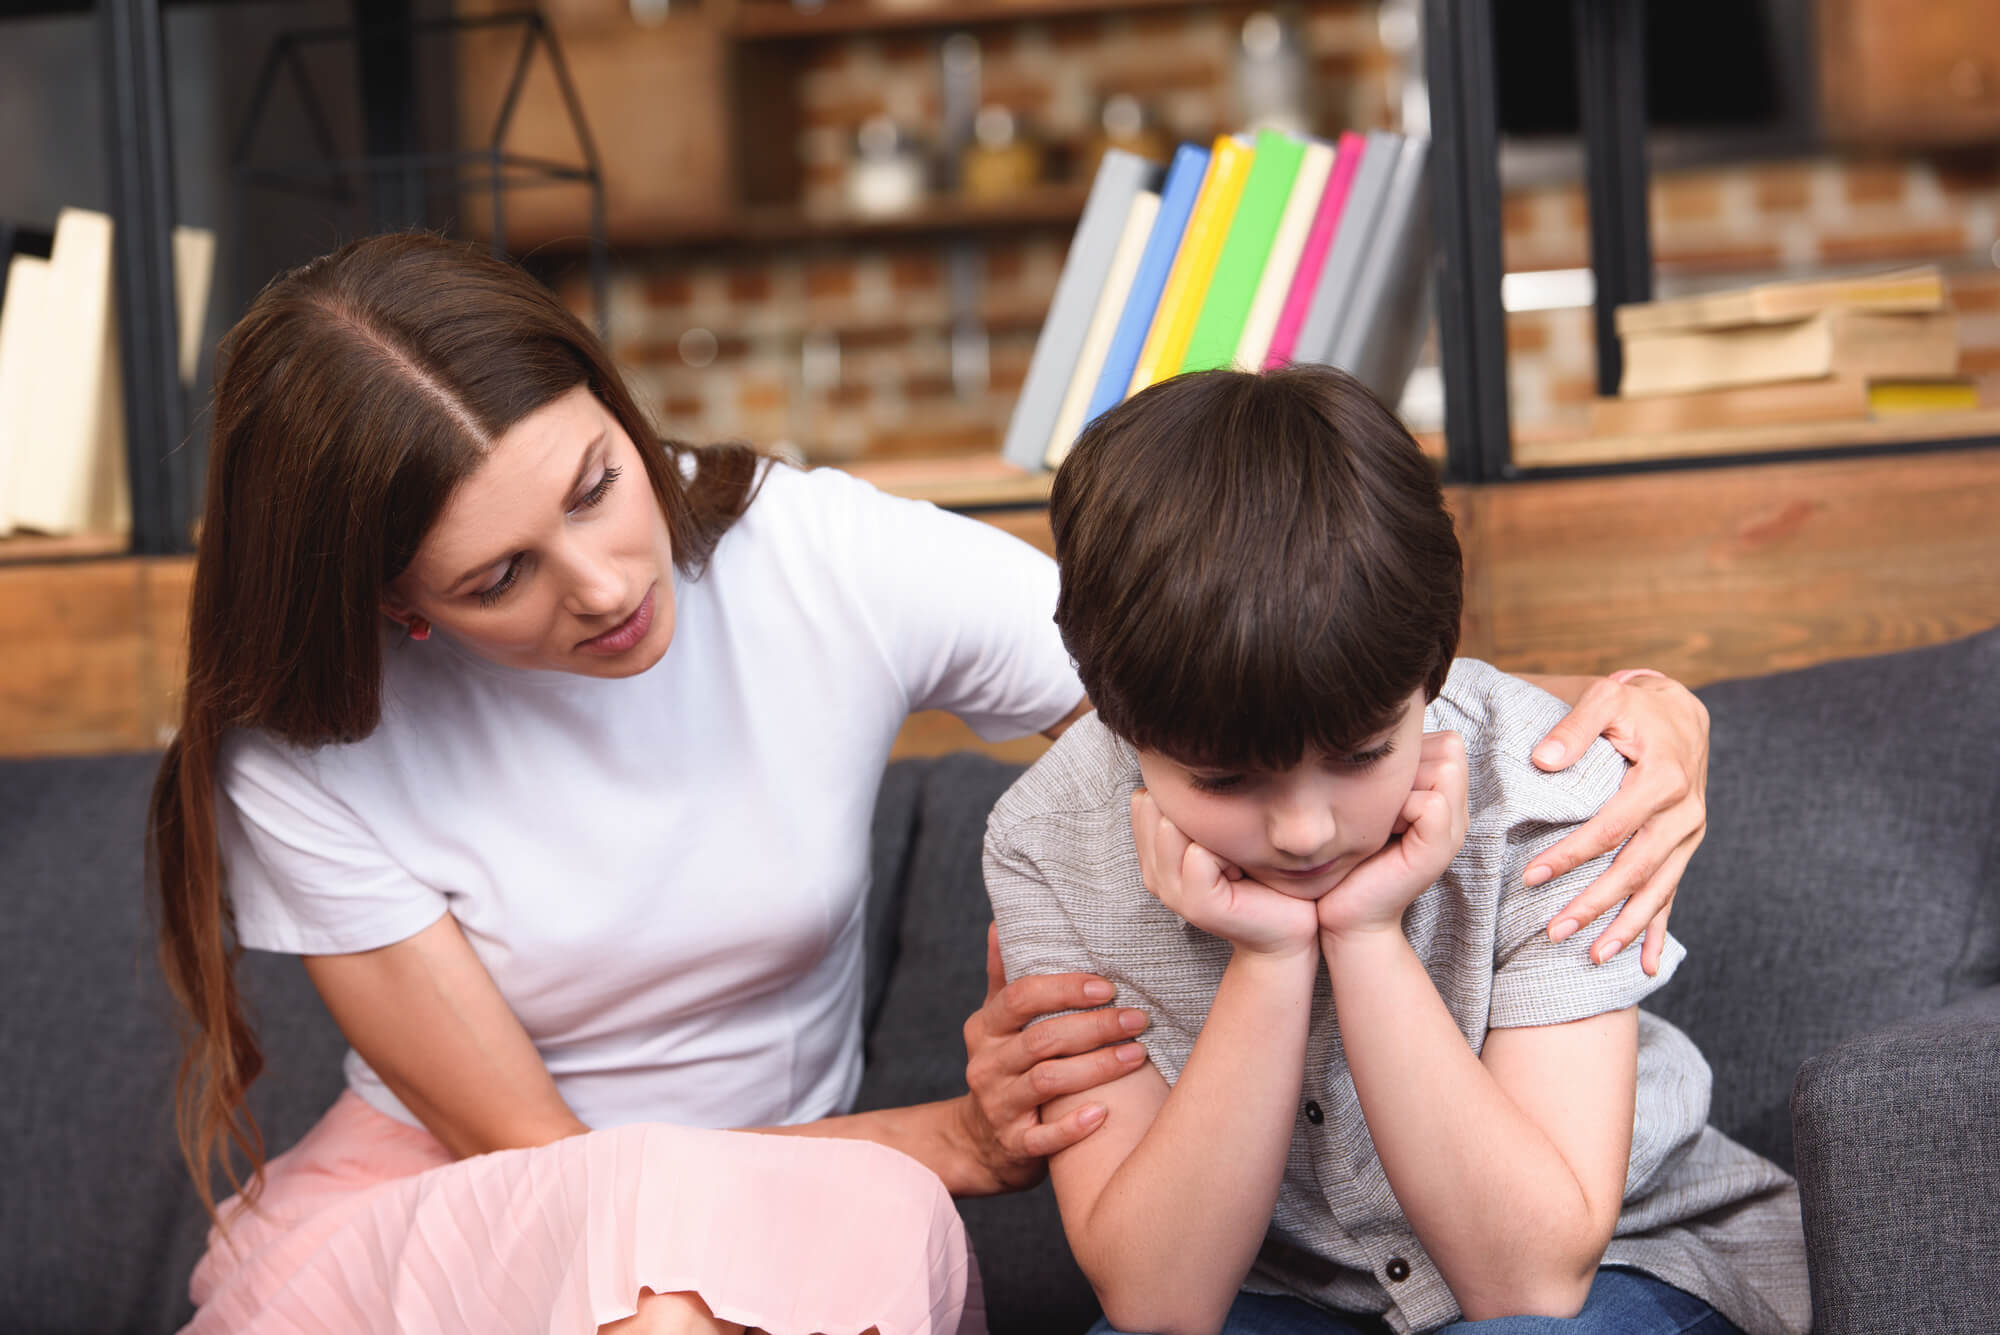 Entenda como a família pode ajudar no combate ao bullying